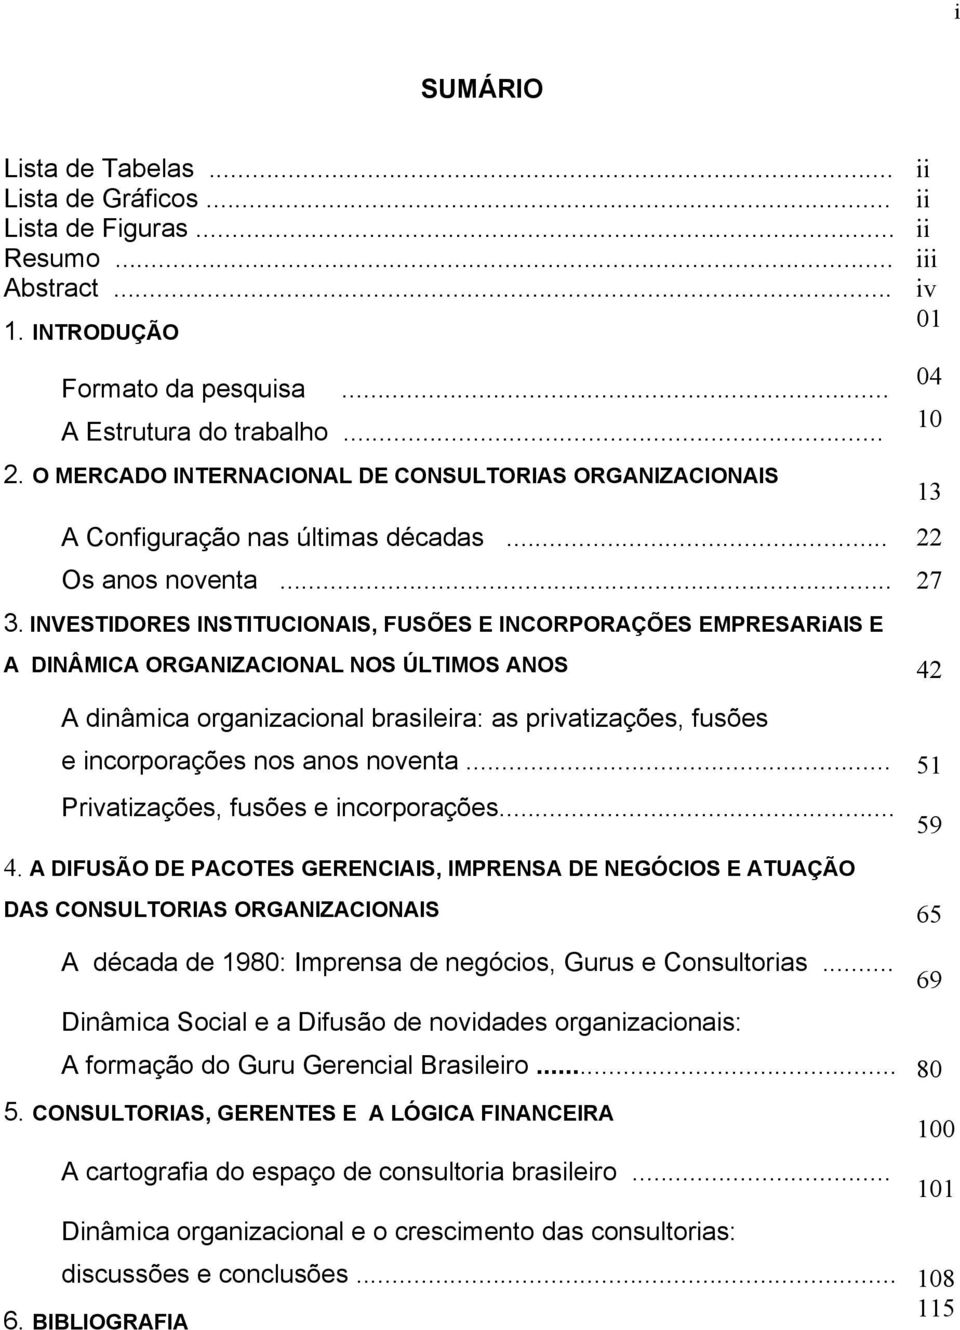 INVESTIDORES INSTITUCIONAIS, FUSÕES E INCORPORAÇÕES EMPRESARiAIS E A DINÂMICA ORGANIZACIONAL NOS ÚLTIMOS ANOS 42 A dinâmica organizacional brasileira: as privatizações, fusões e incorporações nos